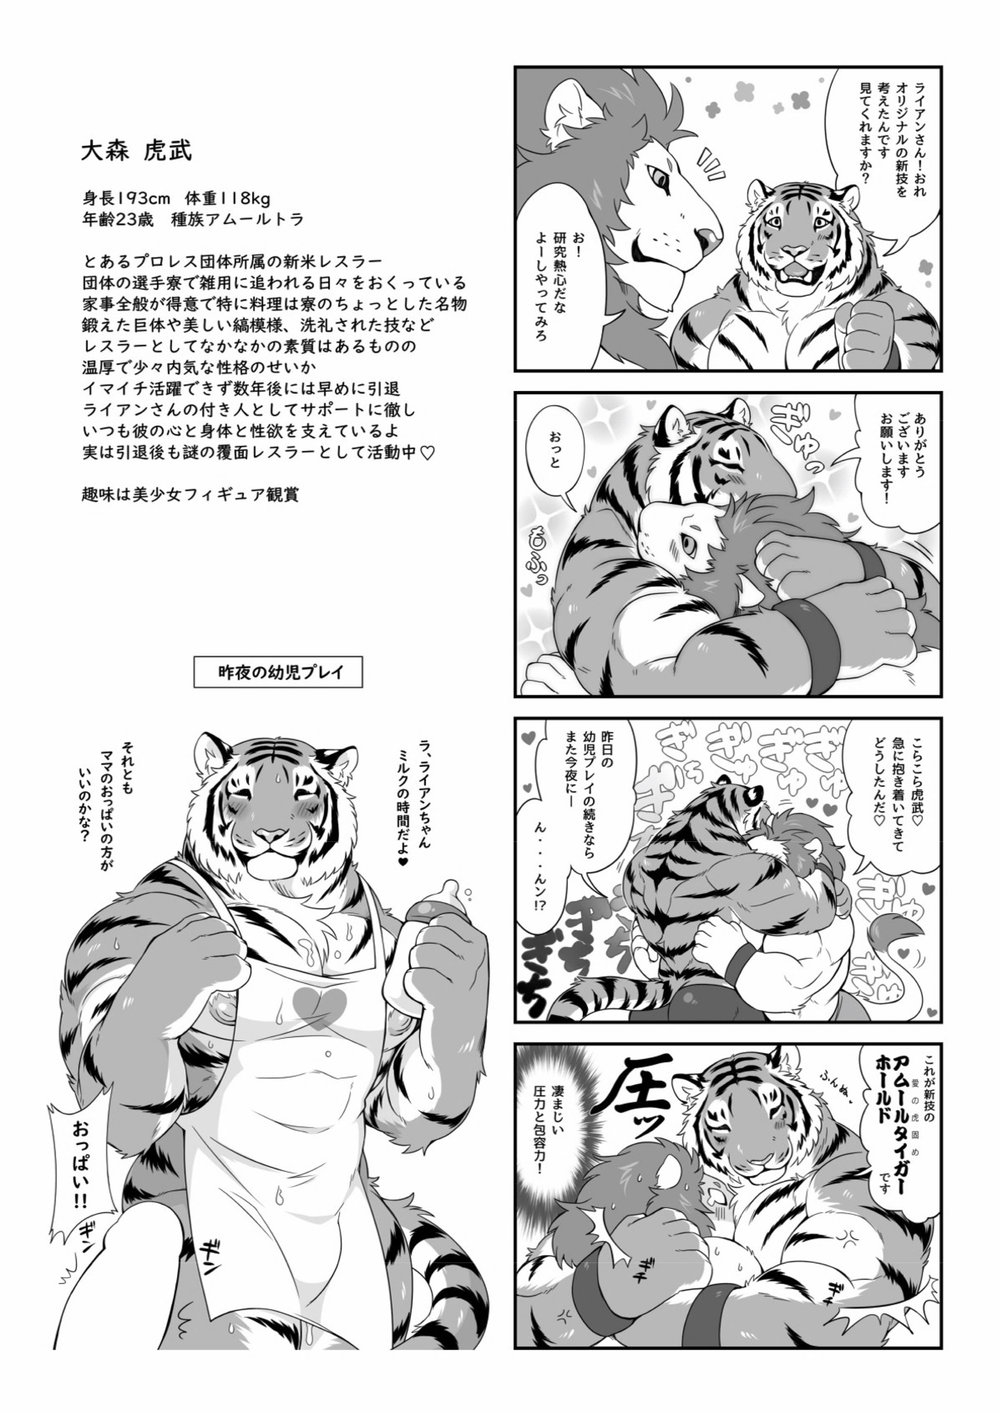 [Kiriyu-o0v0o [Tfws (Kirin)] (giraffe914)] Lyan-san and Toratake-chan 37